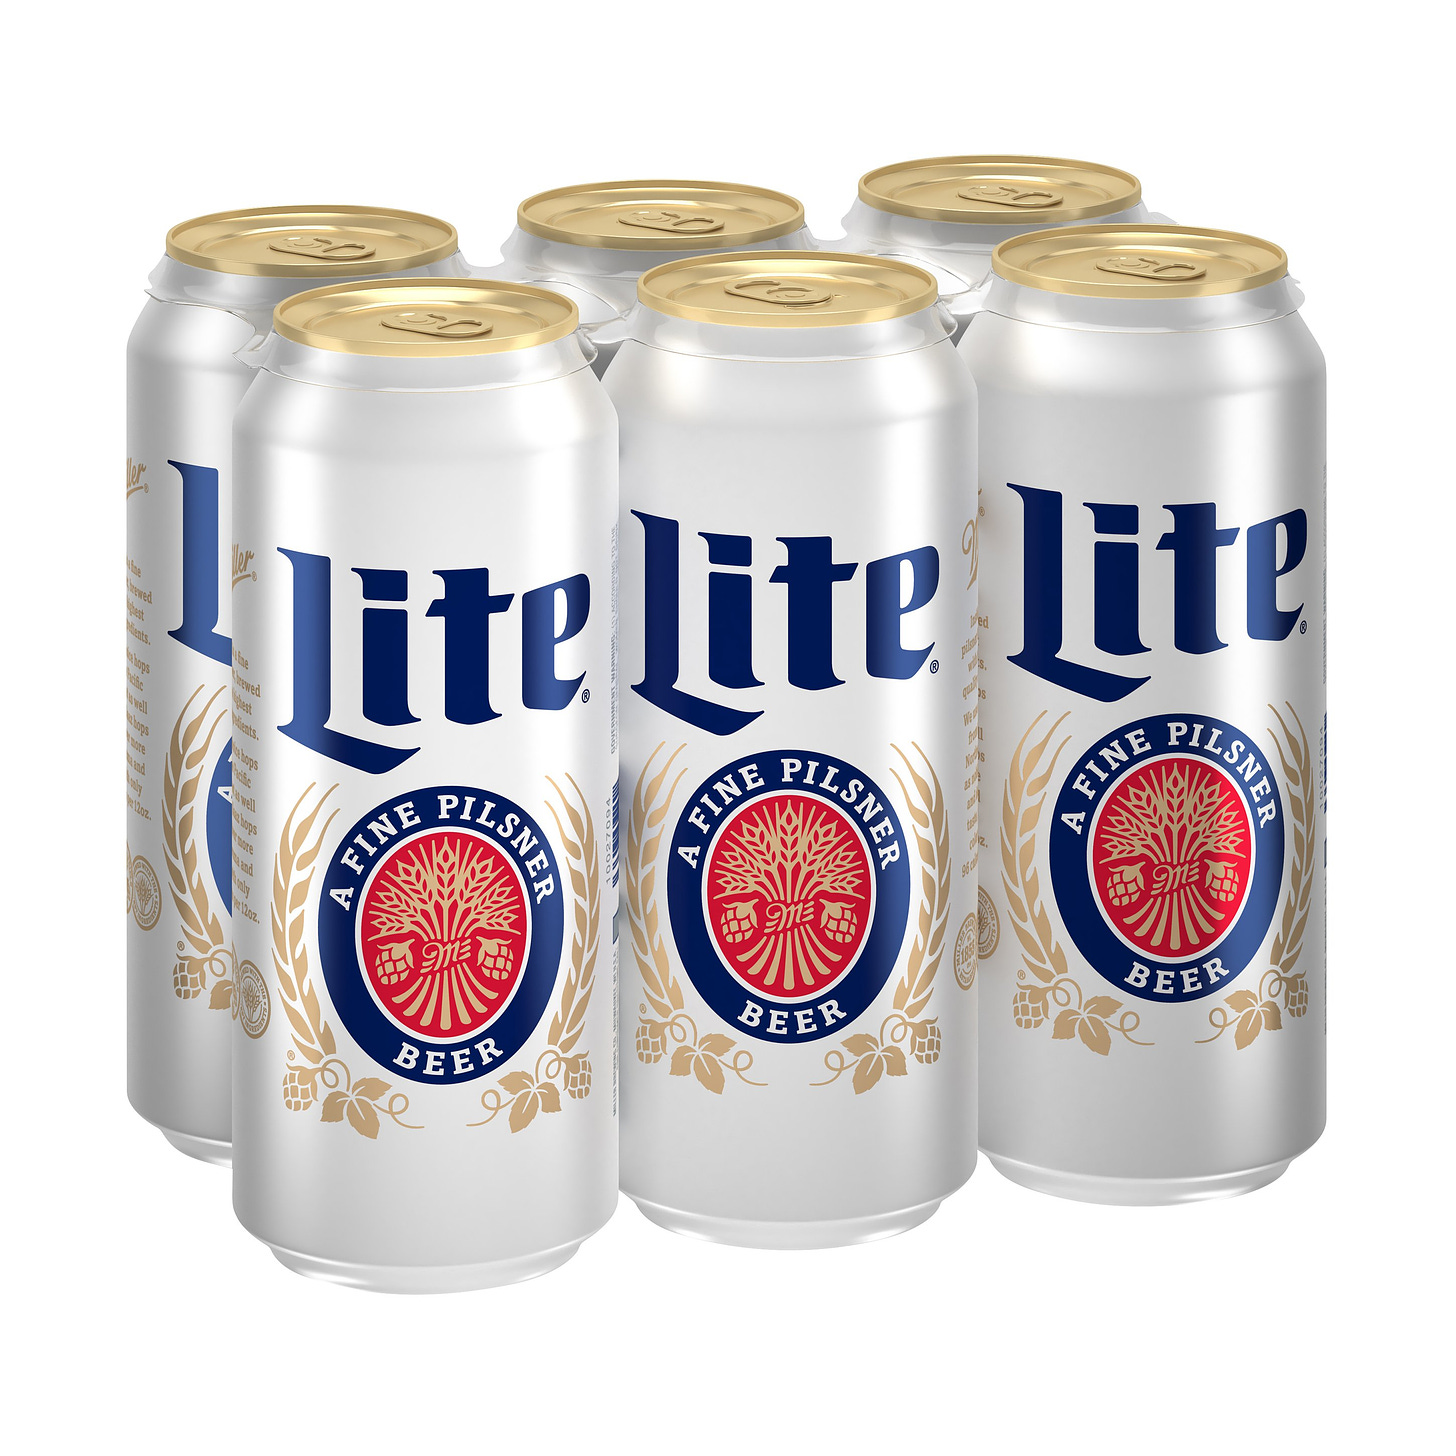 Miller Lite Beer 16 oz Cans - Shop Beer at H-E-B